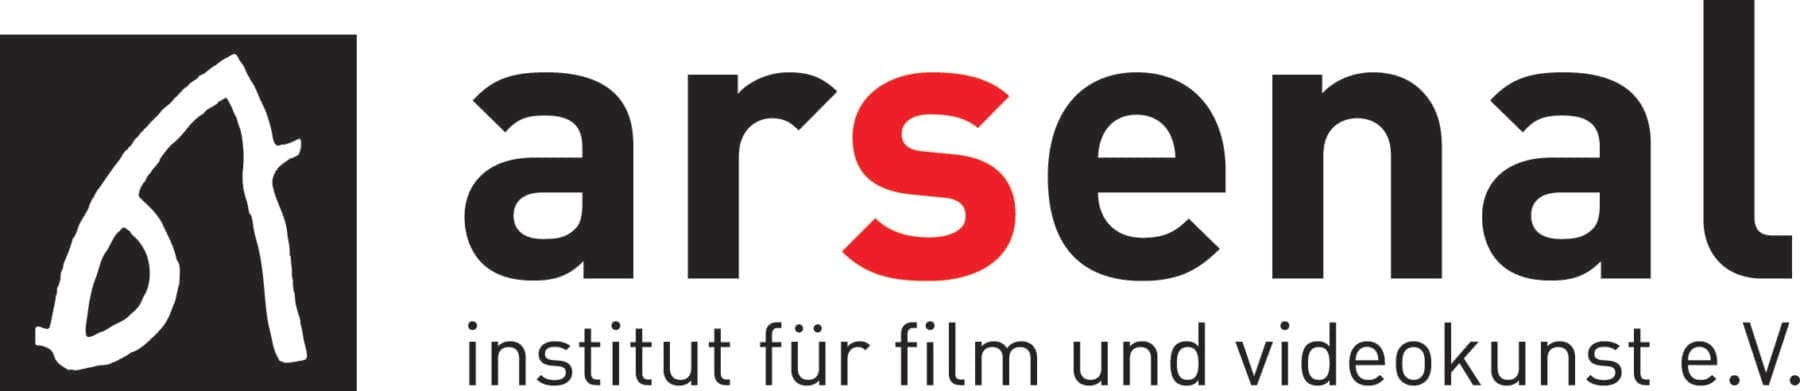 Arsenal Institut für Film- und Videokunst logo